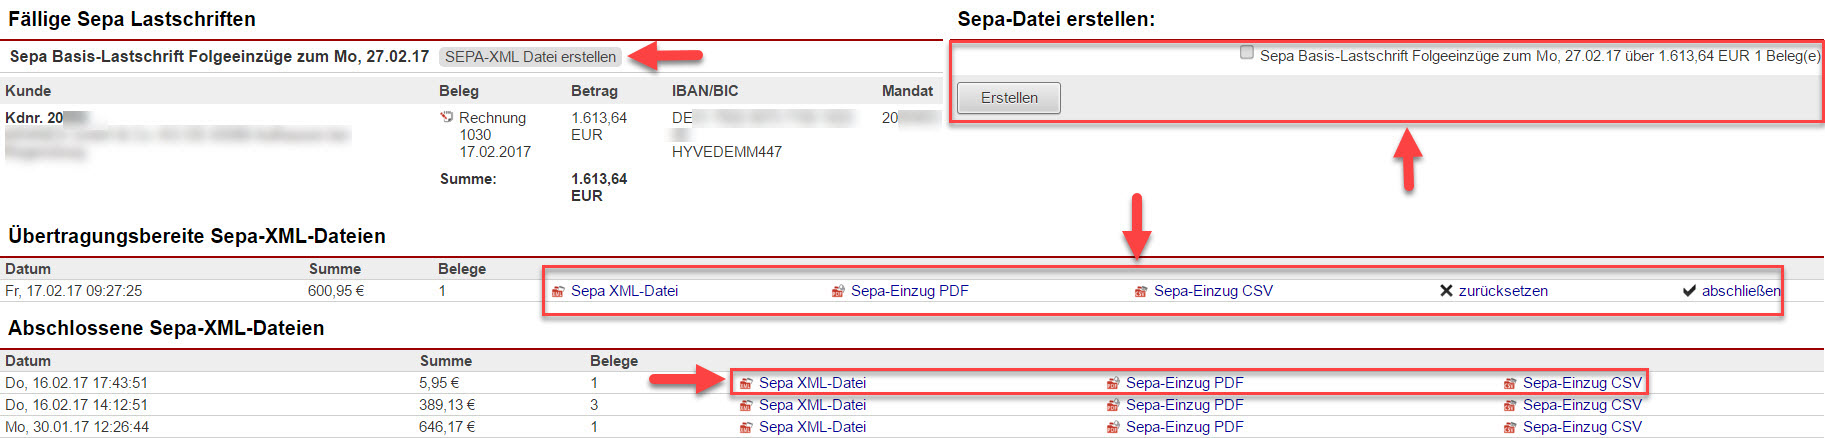 Screenshot SEPA-Lastschriftenübersicht mit Markierung verschiedener Bereiche